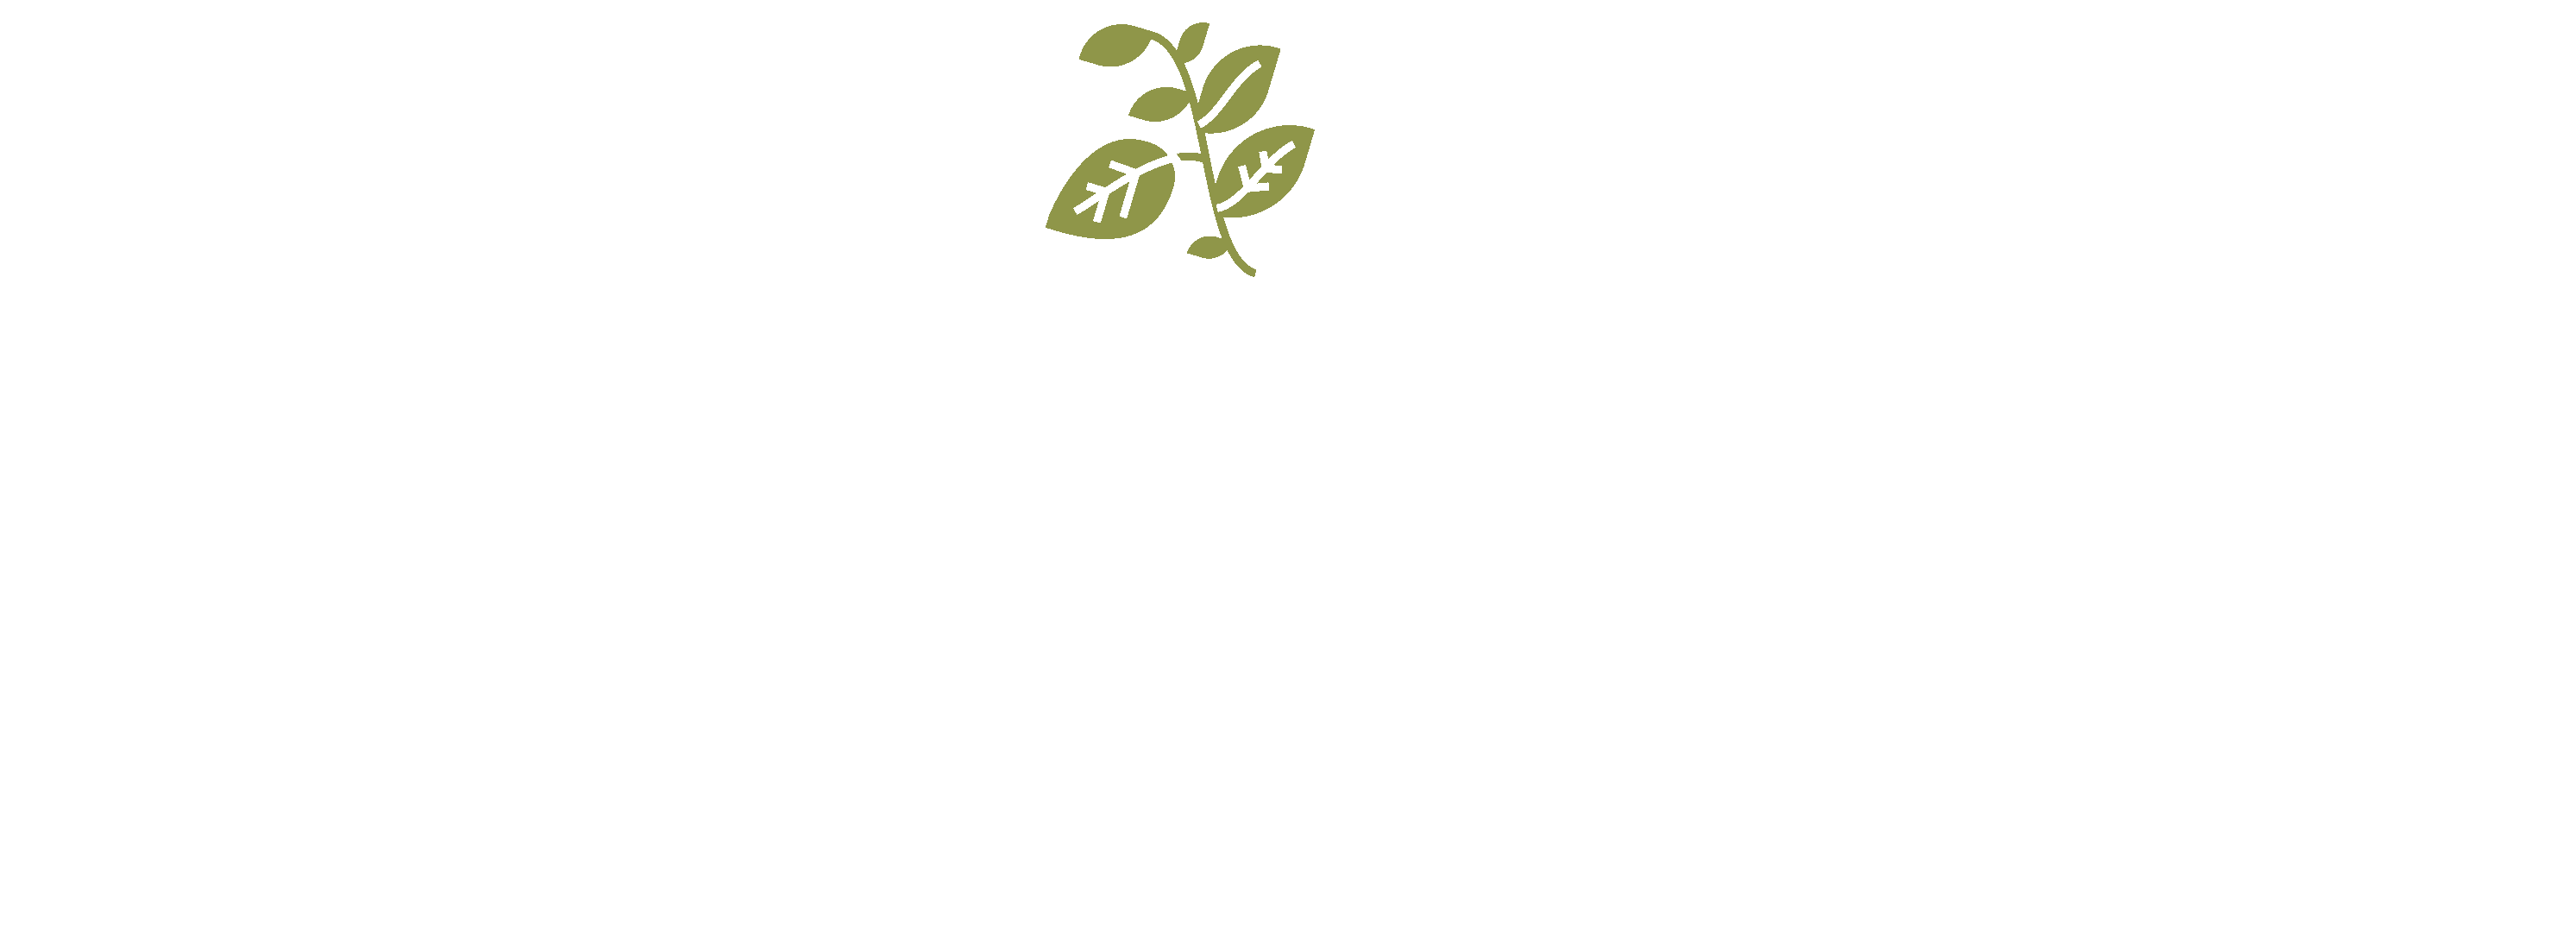 illustrated leaf